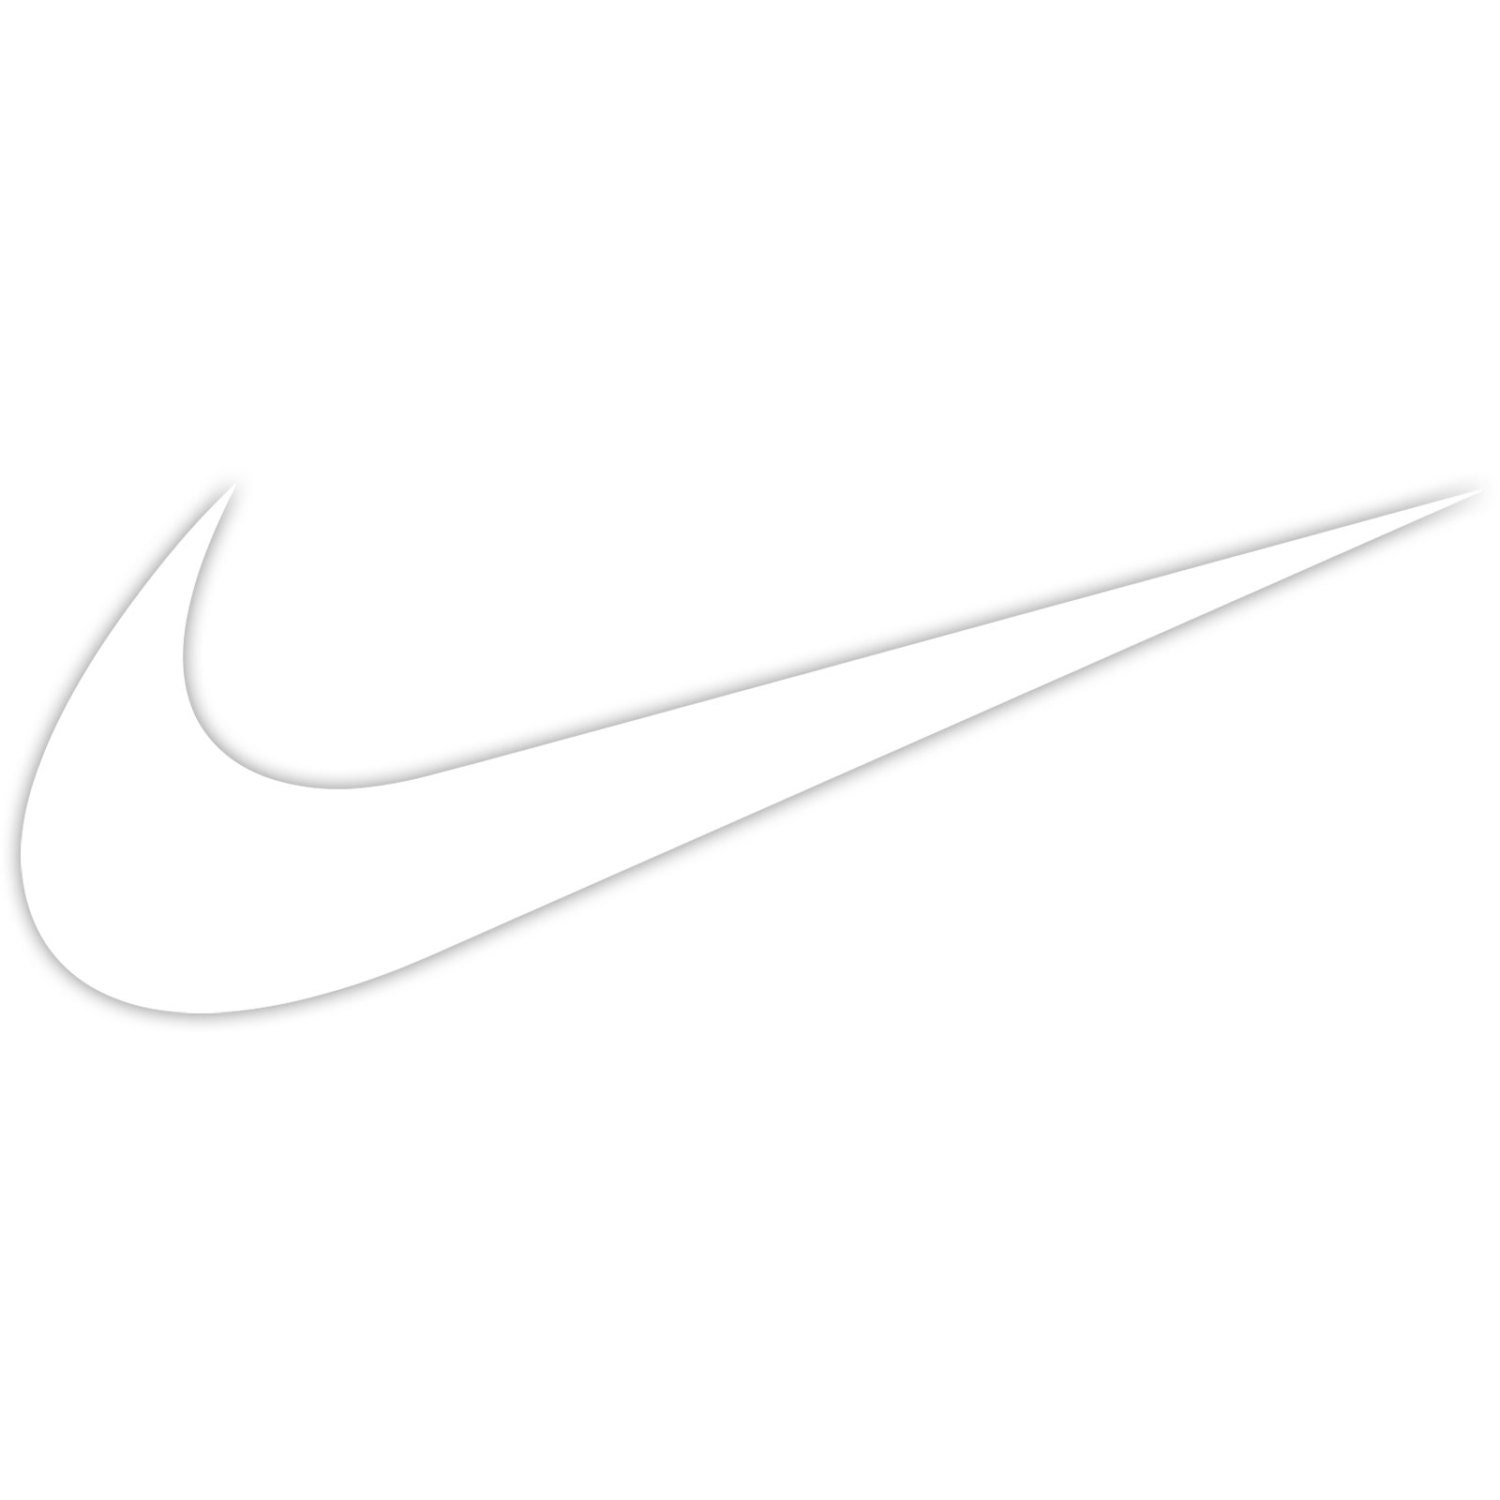 Nike Swoosh Logo Sticker Decal Car Truck Window Laptop Die Cut | Etsy